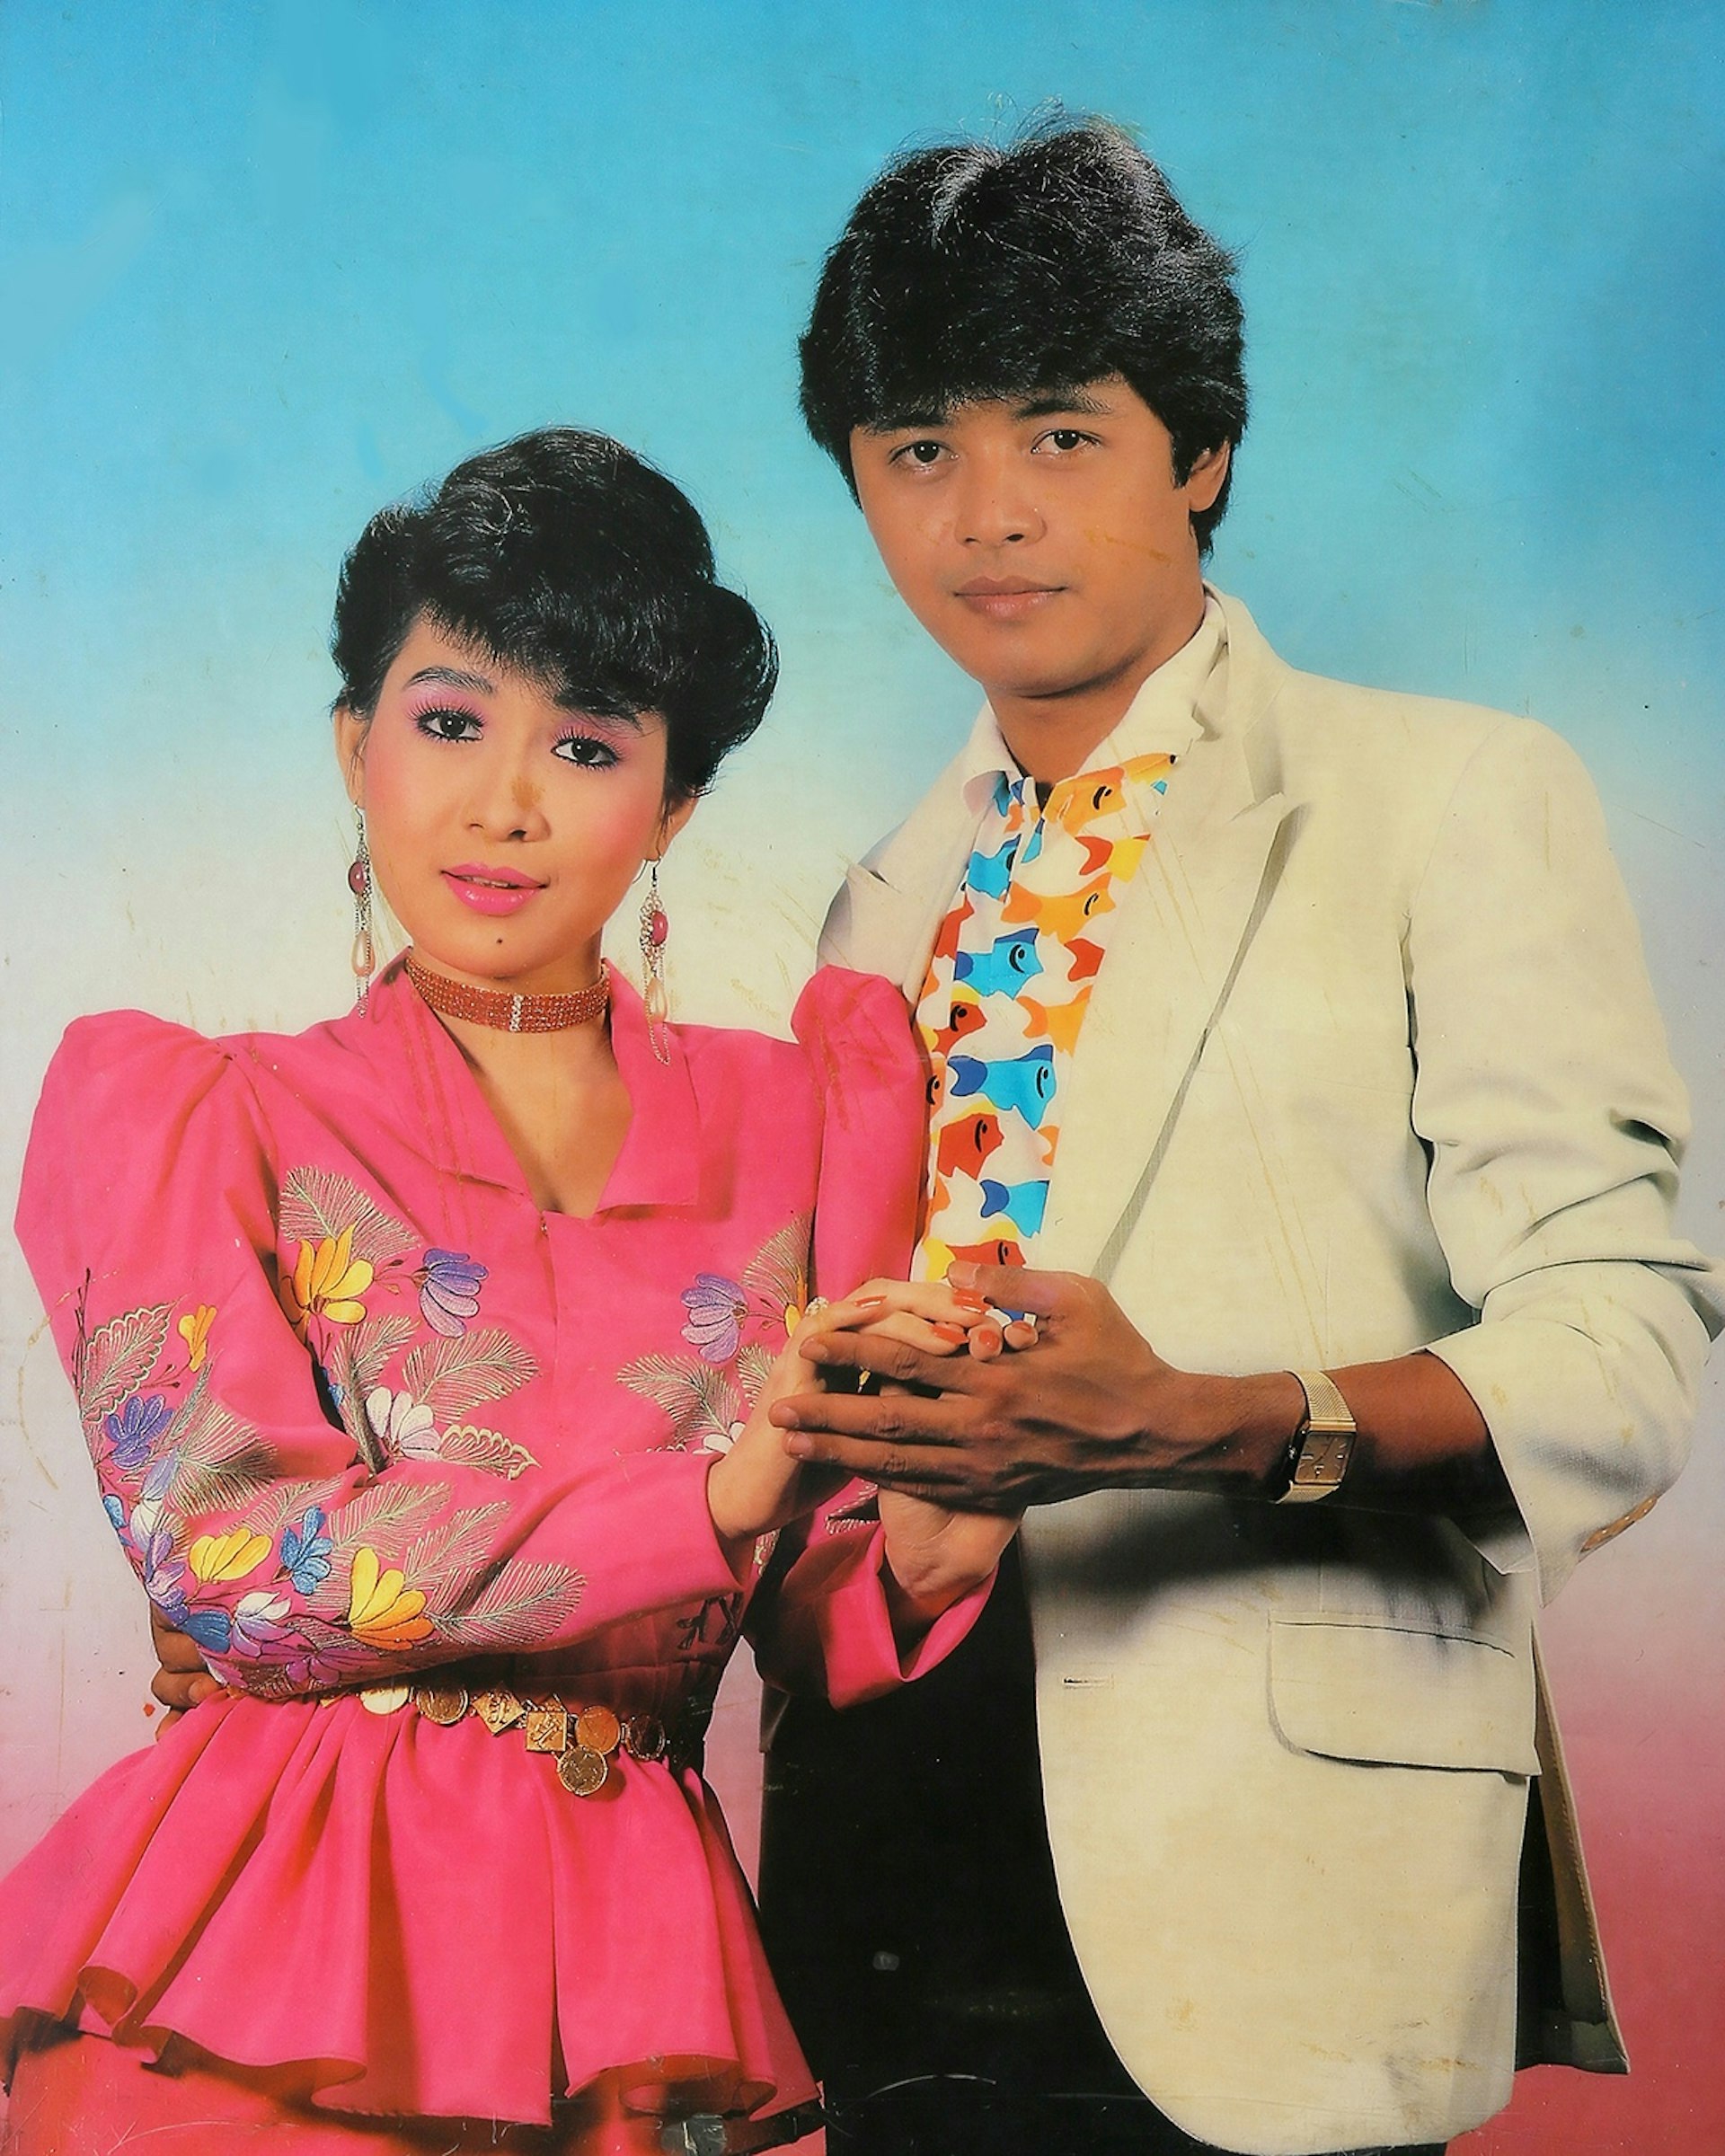 Actors Kyaw Thu & May Than Nu. Taken by U Sann Aung, USA Photo Studio, Yangon 1989/1990.